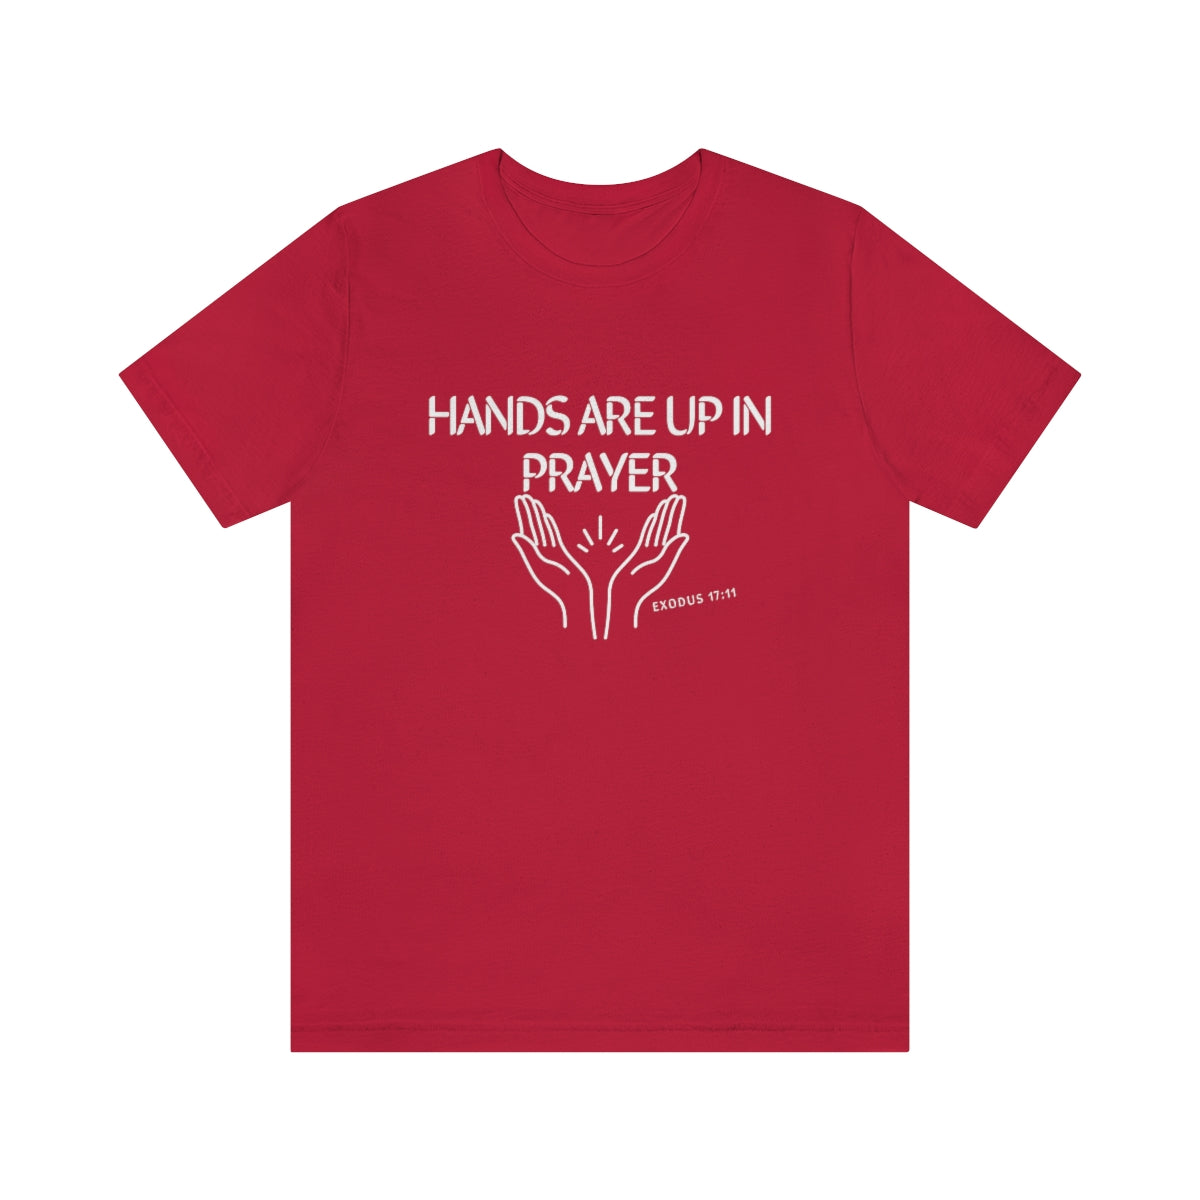 HANDS UP IN PRAYER T-SHIRT-T-Shirt-Red-S-mysticalcherry